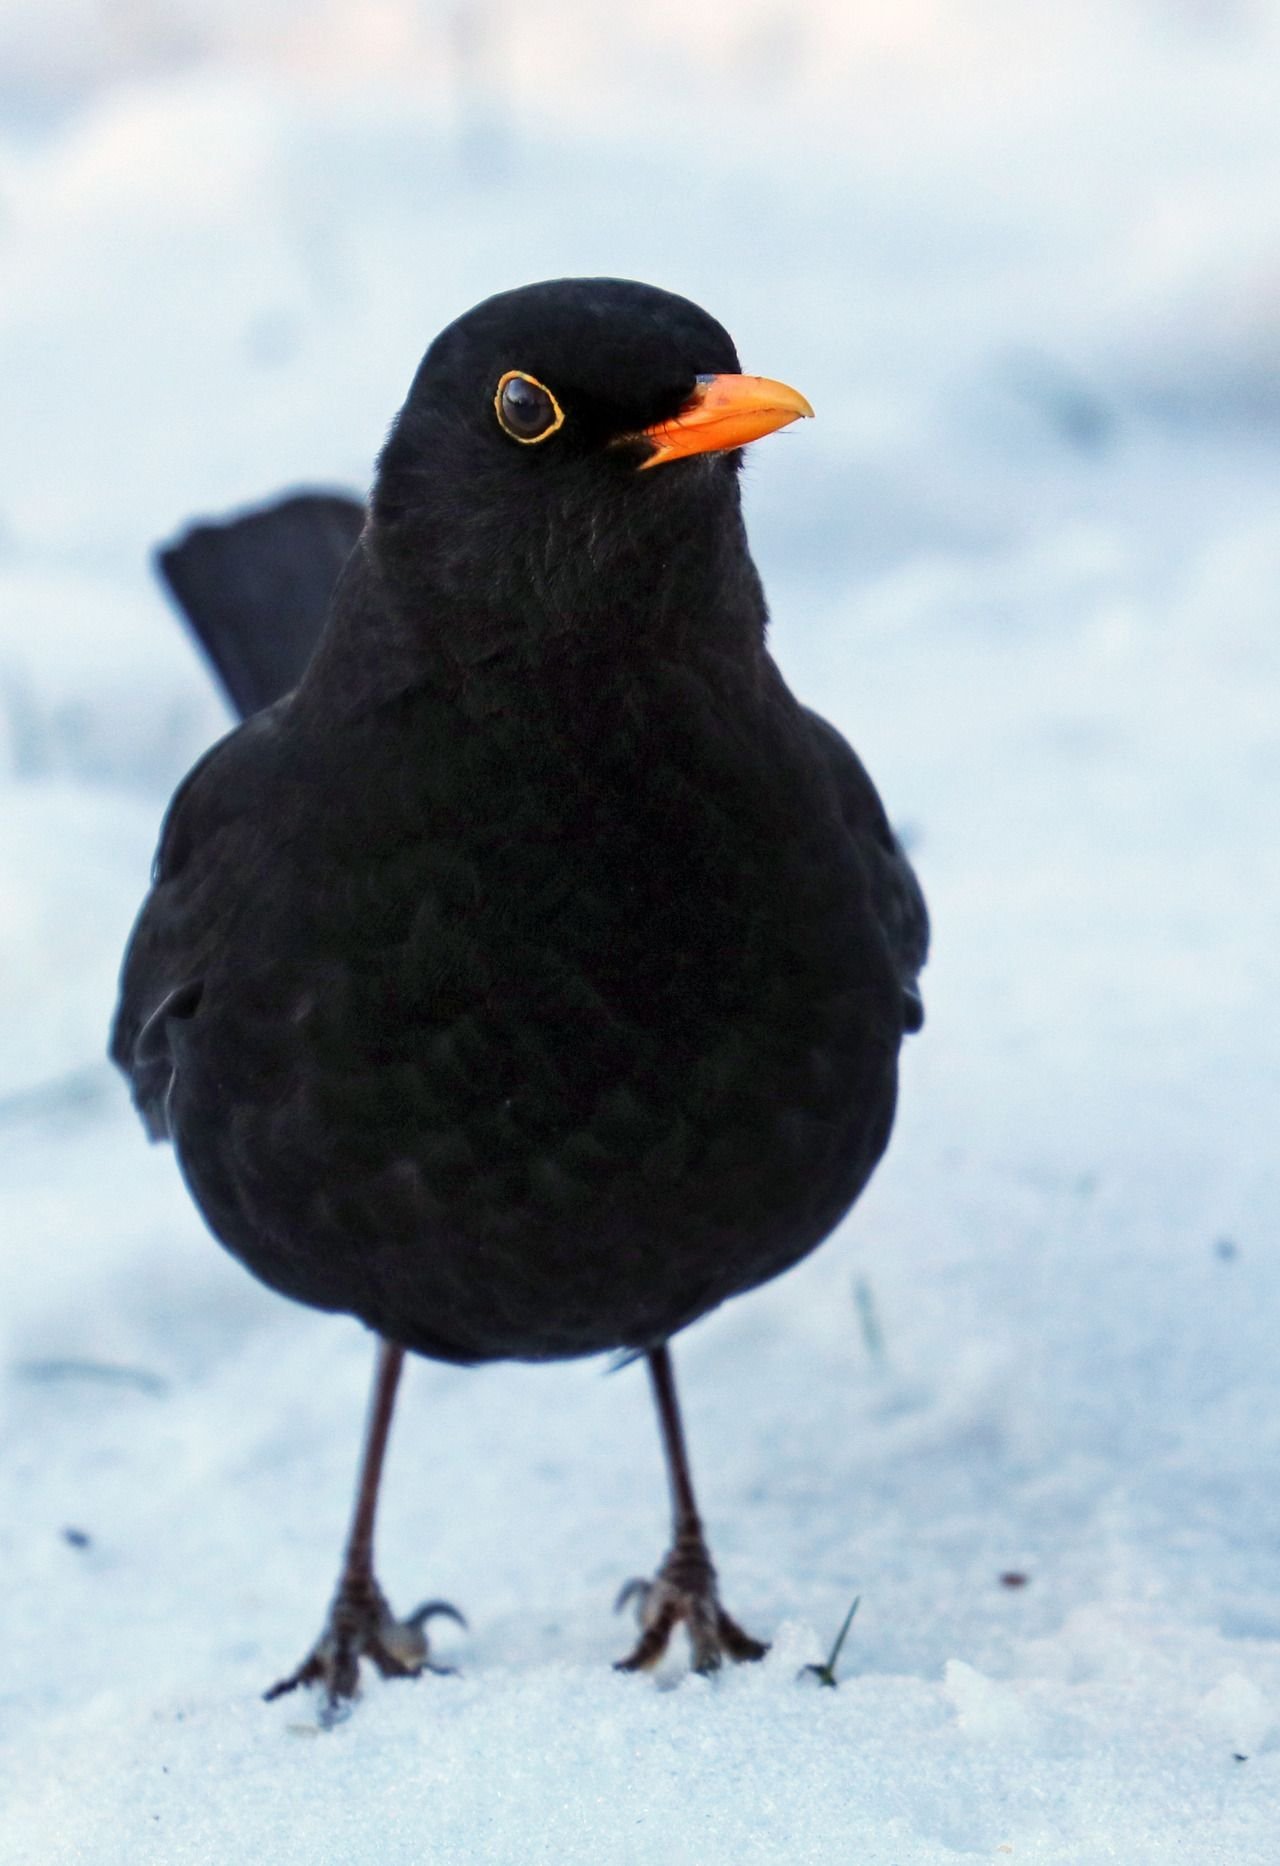 Как называется черная птица с оранжевым клювом